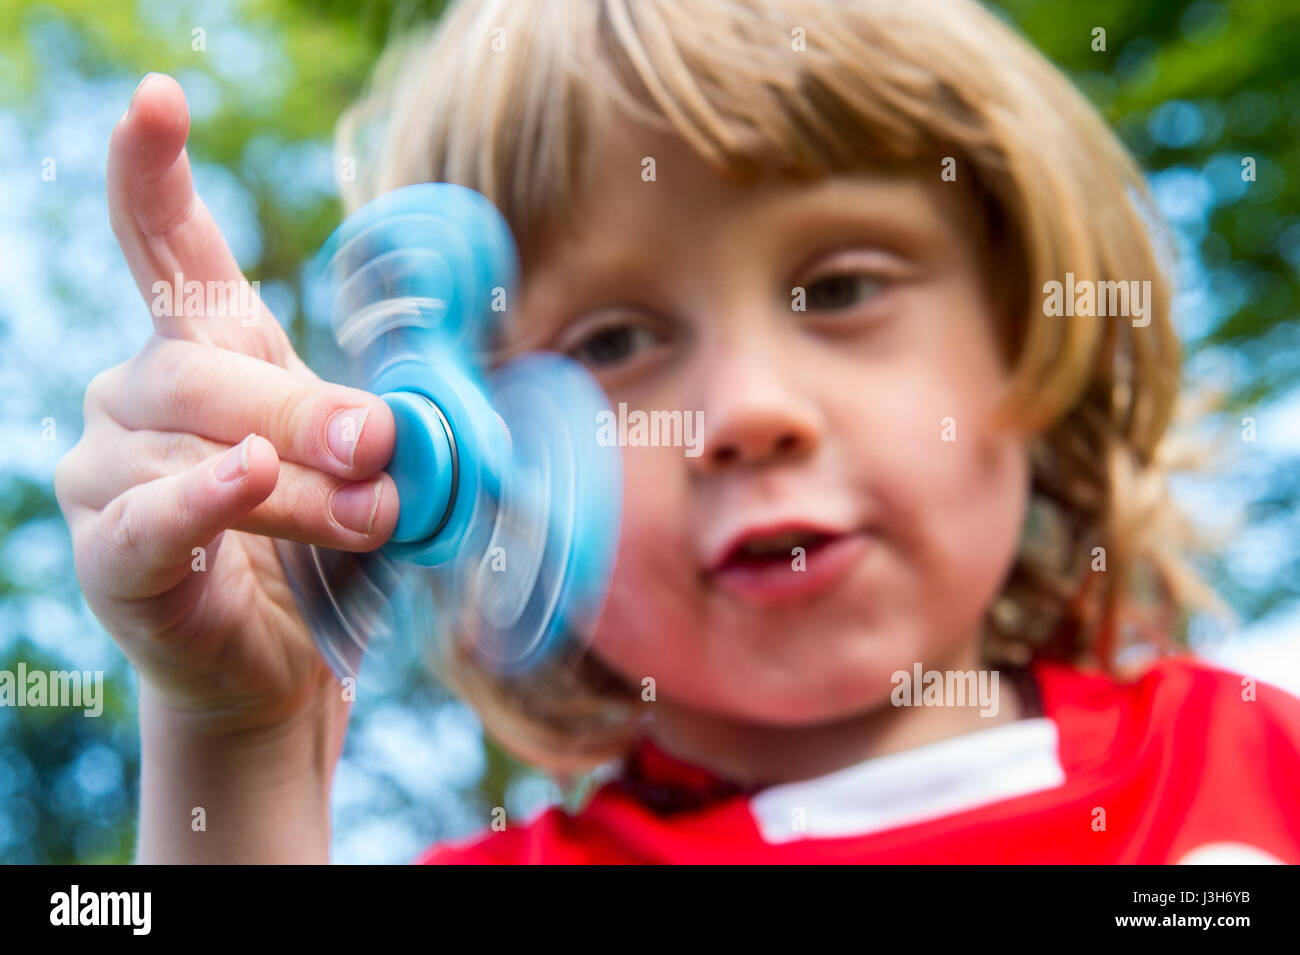 Ein kleiner Junge in eine rote Schuluniform spielt mit einem blauen Fidget Spinner Spielzeug Stockfoto